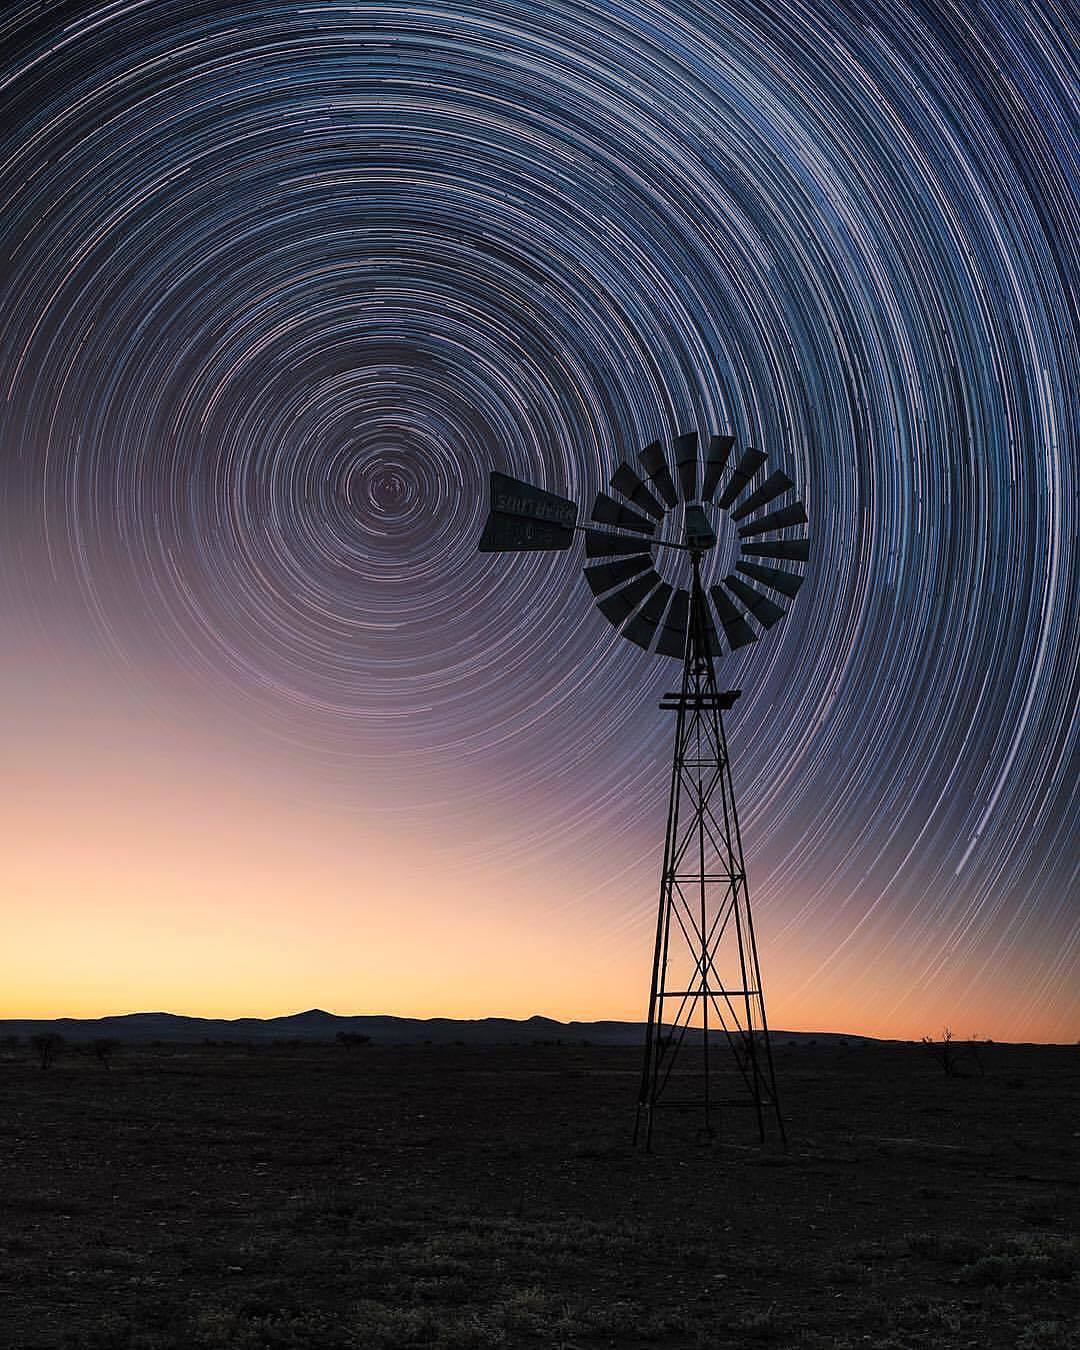  风车与星轨，Jay Daley摄于澳大利亚中部。 